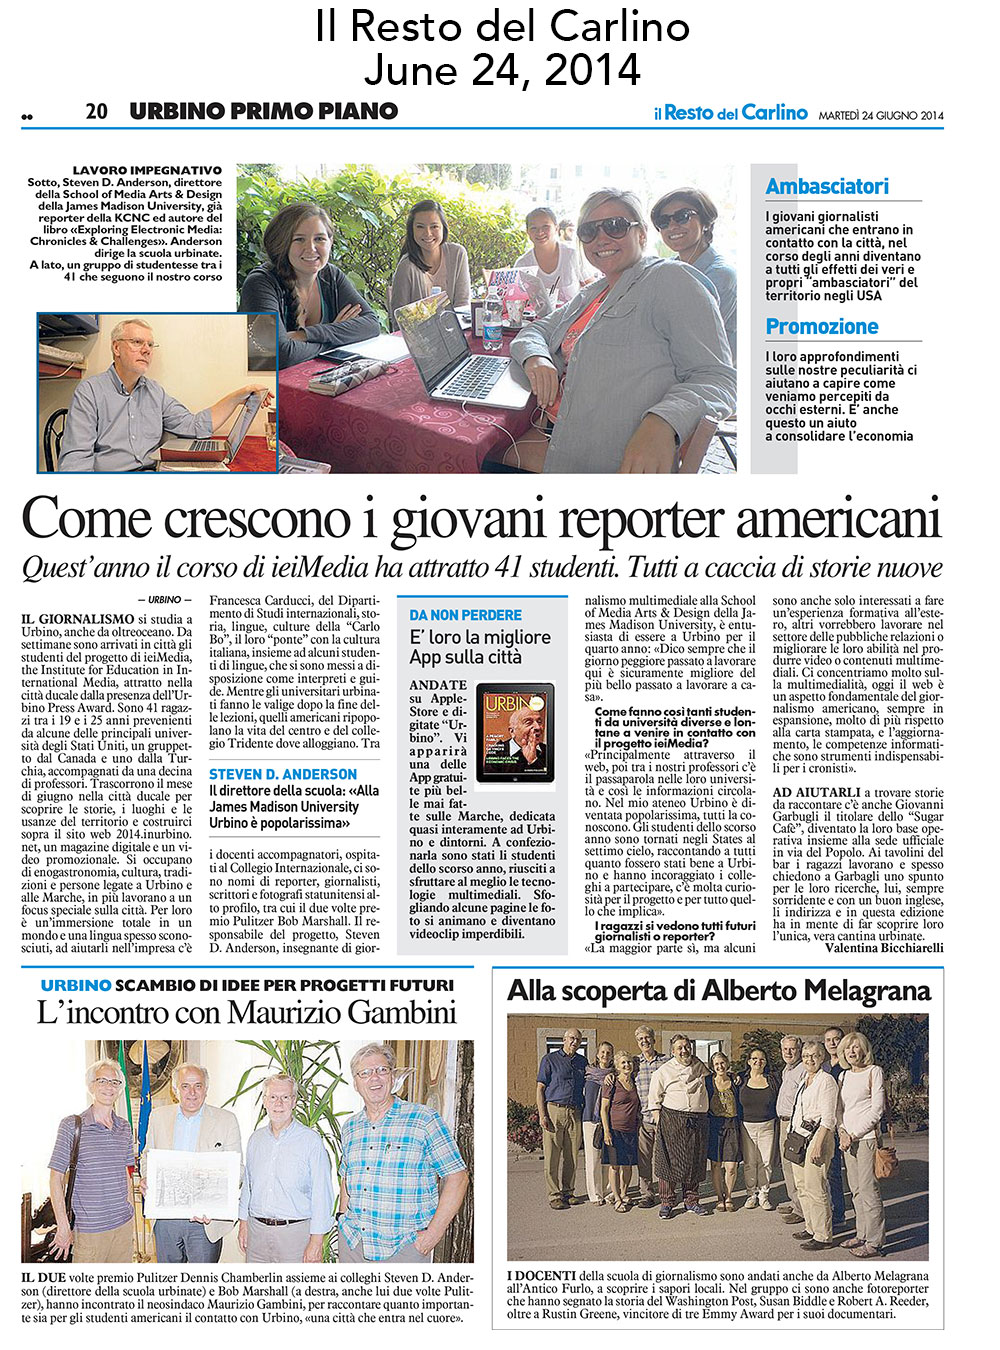 Il Resto del Carlino, June 24, 2014